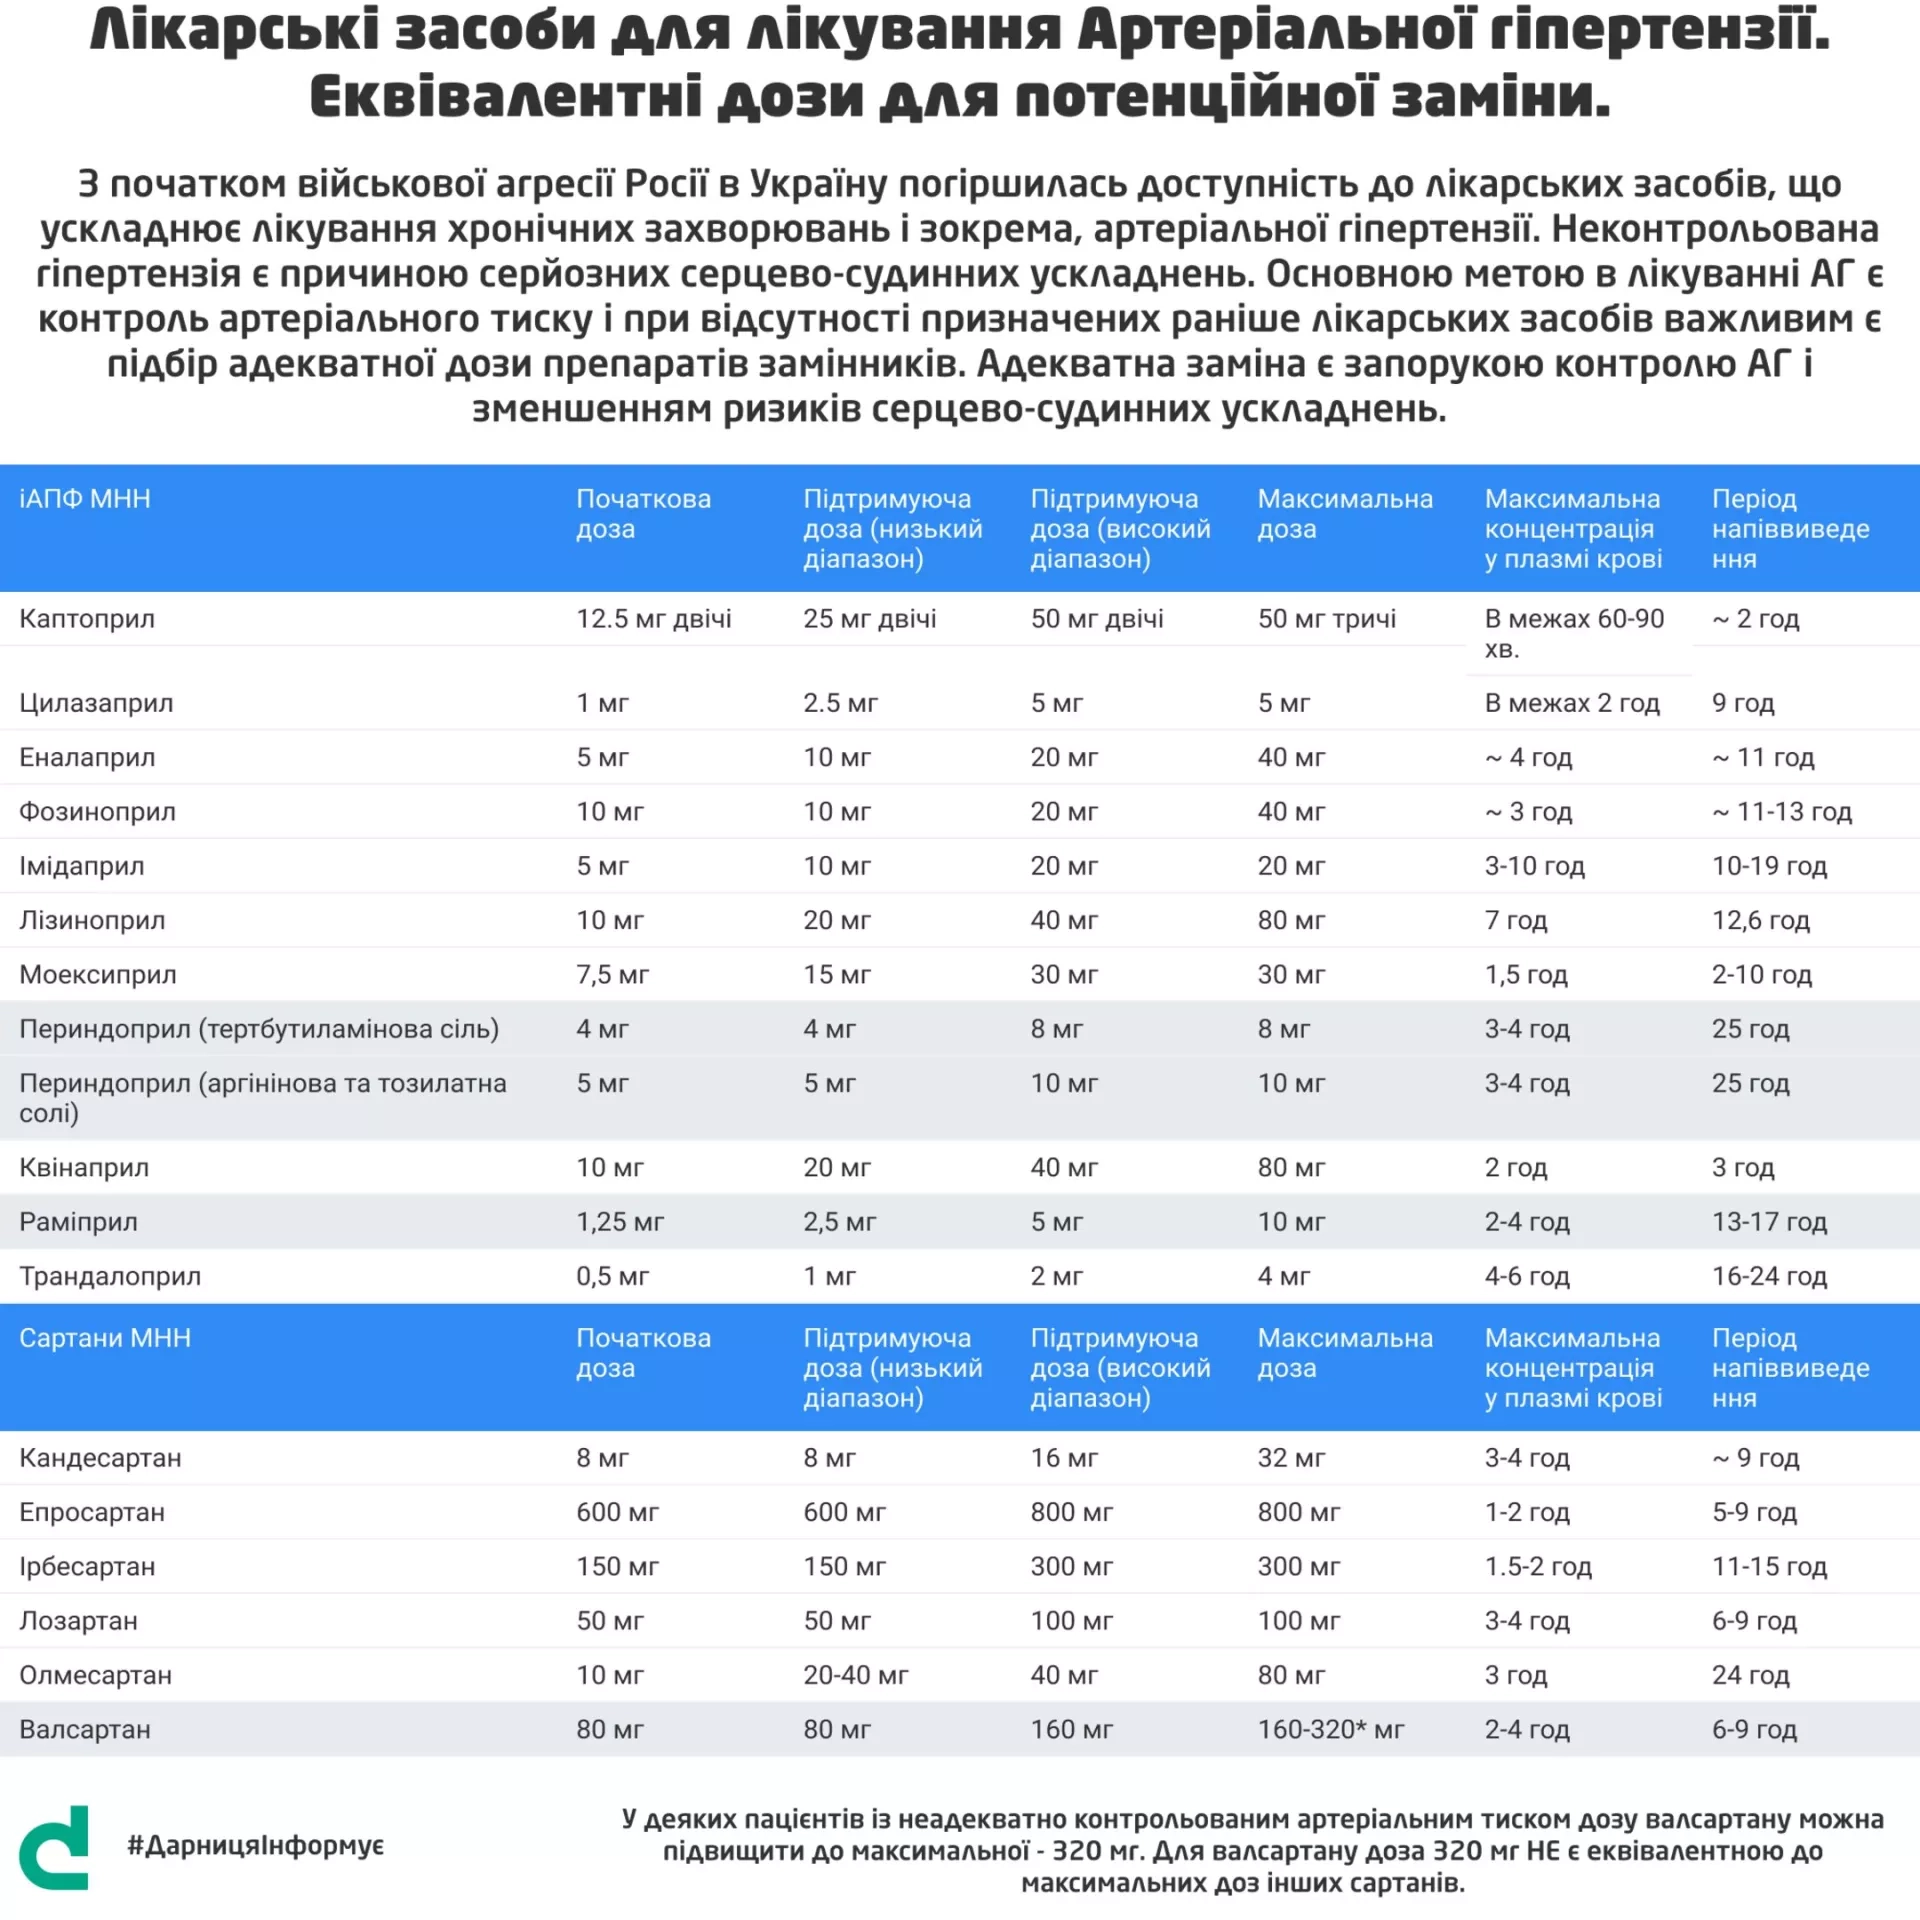 #ДарницяІнформує: Еквівалентні дози лікарських засобів у разі відсутності потрібних